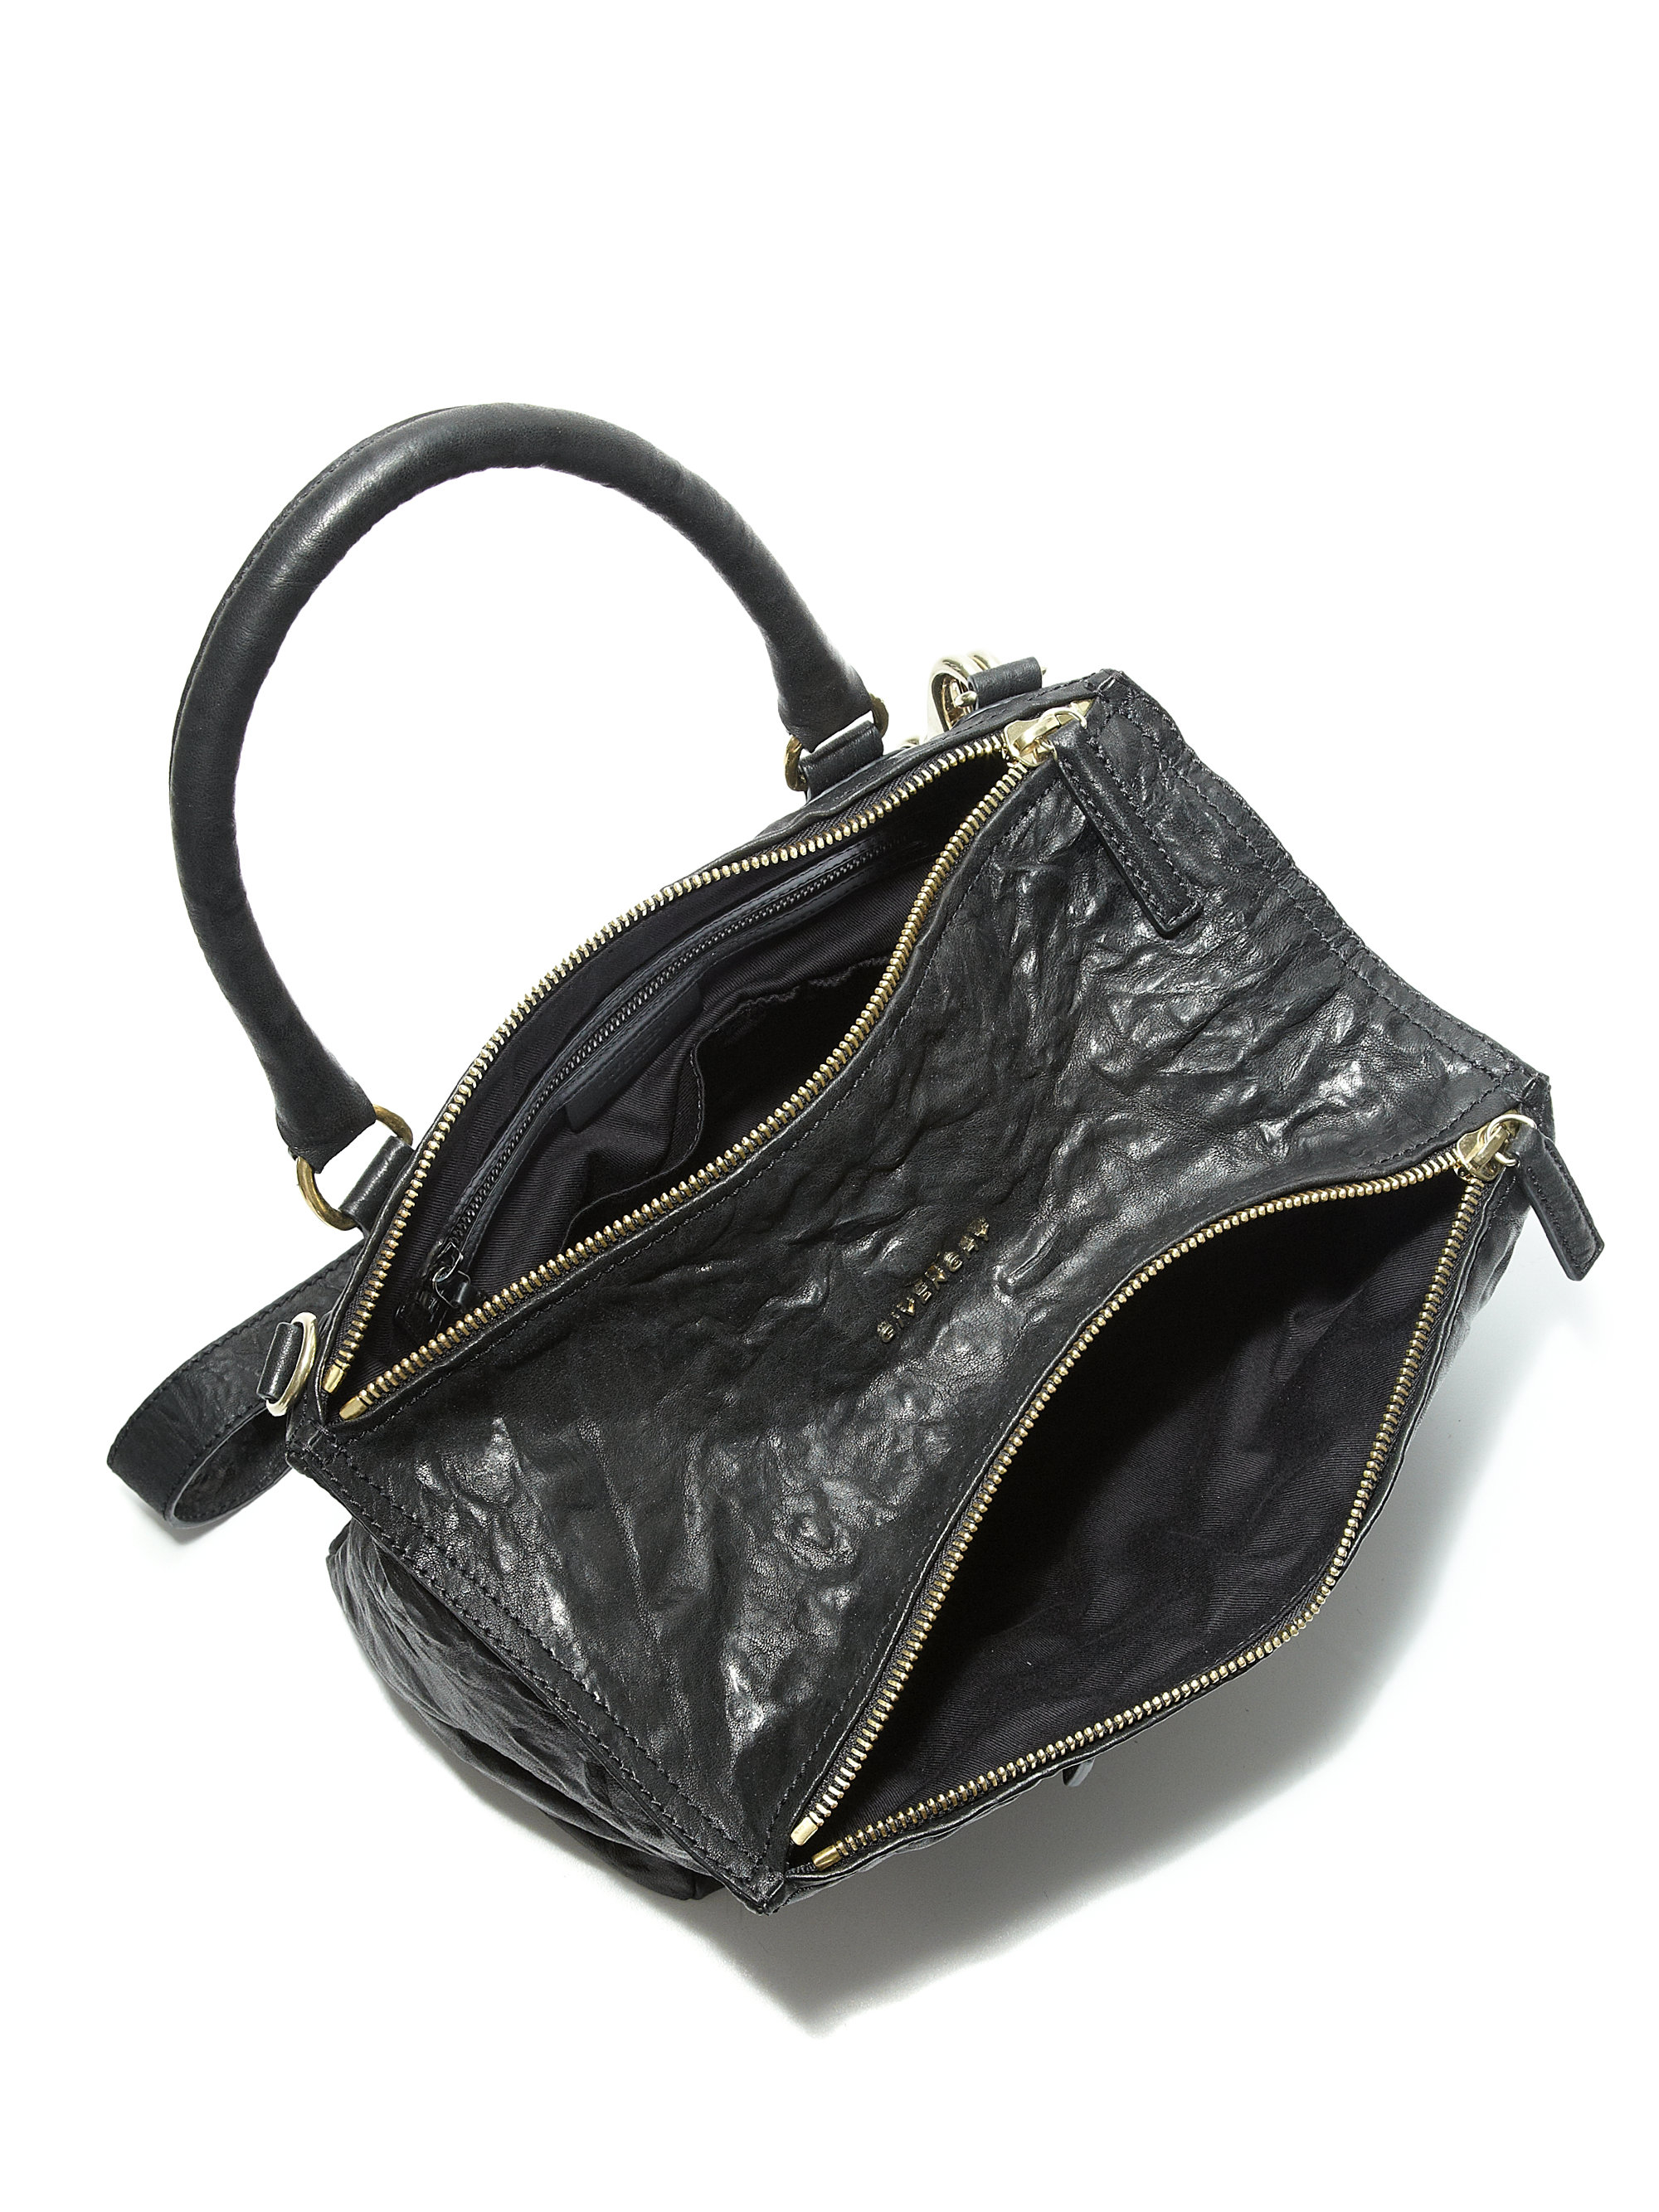 Givenchy Pandora Medium Wrinkled-Leather Shoulder Bag in Black | Lyst